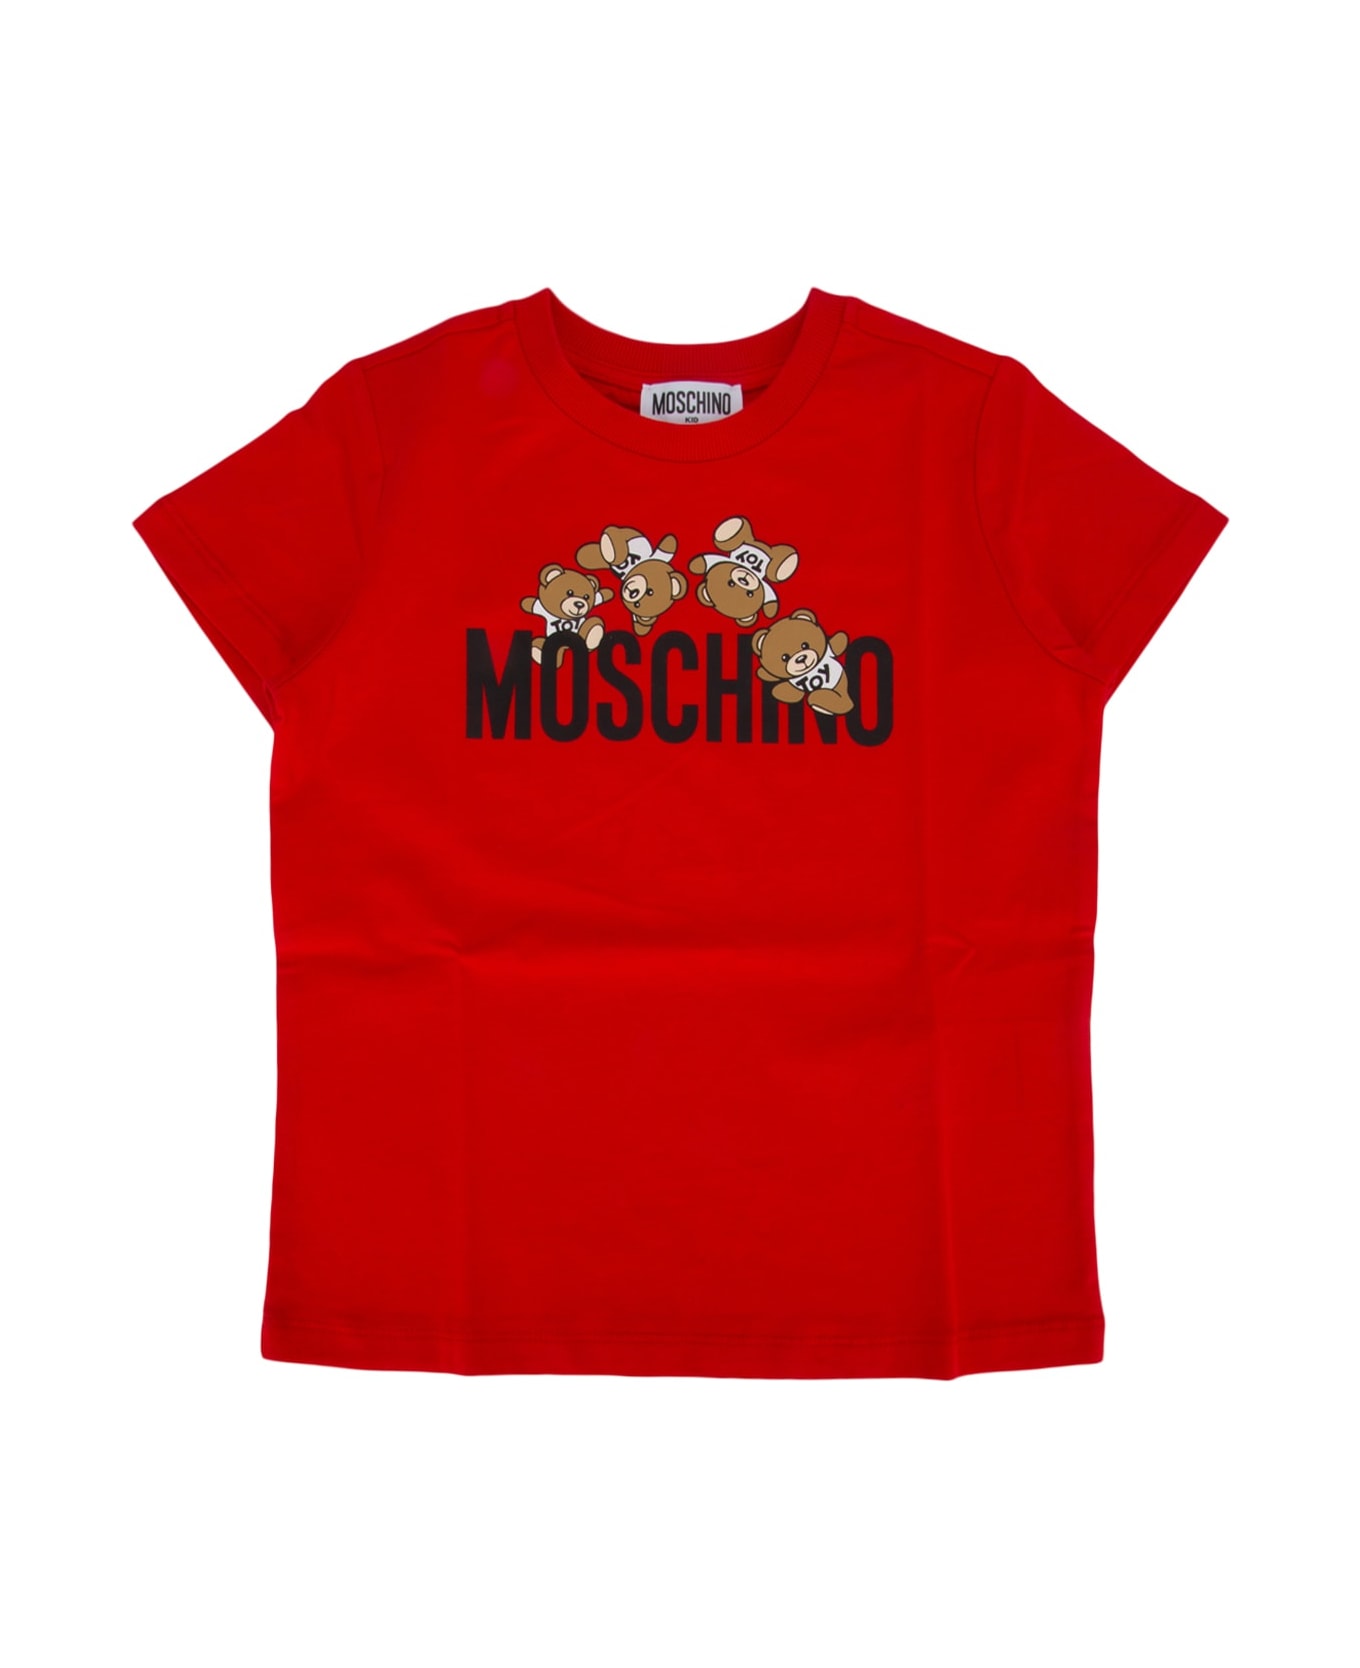 Moschino T-shirt - POPPYRED